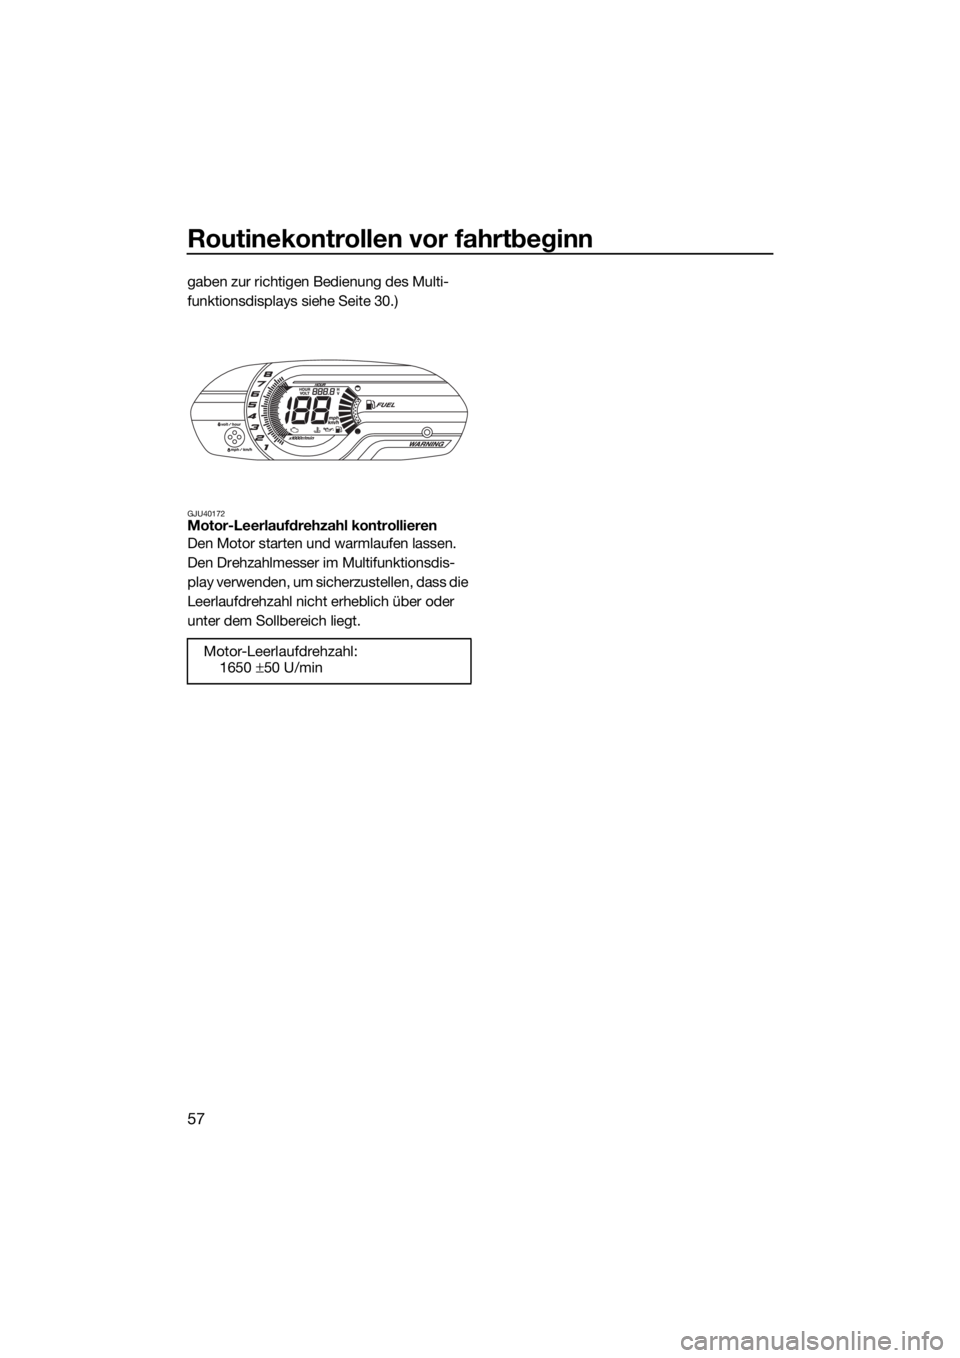 YAMAHA V1 2015  Betriebsanleitungen (in German) Routinekontrollen vor fahrtbeginn
57
gaben zur richtigen Bedienung des Multi-
funktionsdisplays siehe Seite 30.)
GJU40172Motor-Leerlaufdrehzahl kontrollieren
Den Motor starten und warmlaufen lassen. 
